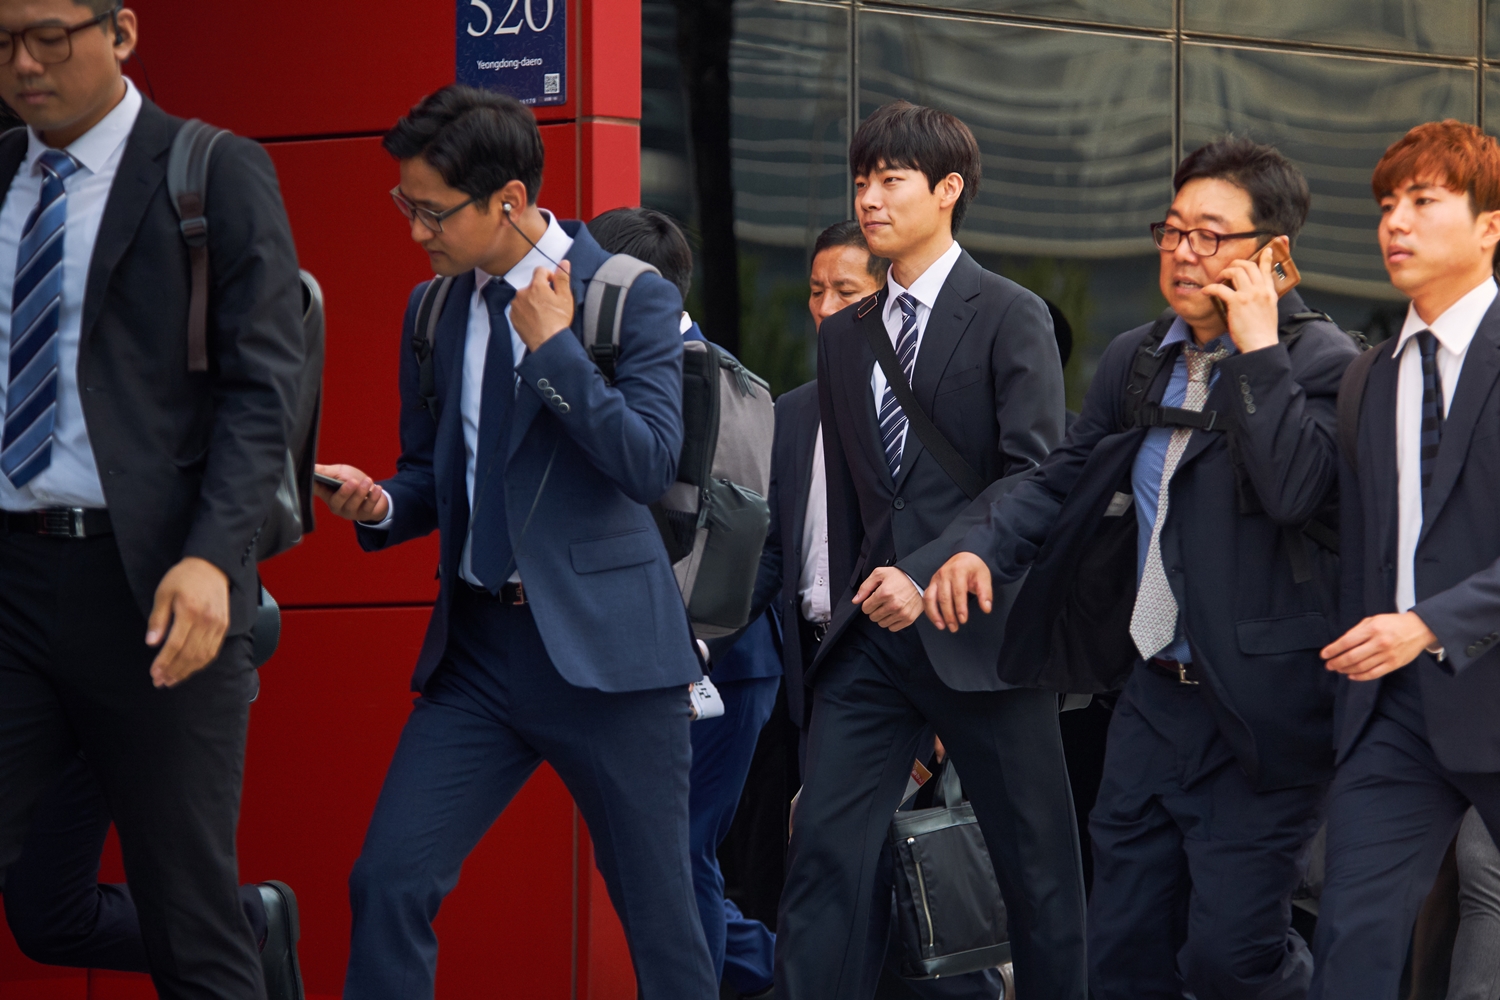 Tỷ lệ thất nghiệp của những người trẻ ở Hàn Quốc chiếm tỷ lệ cao.